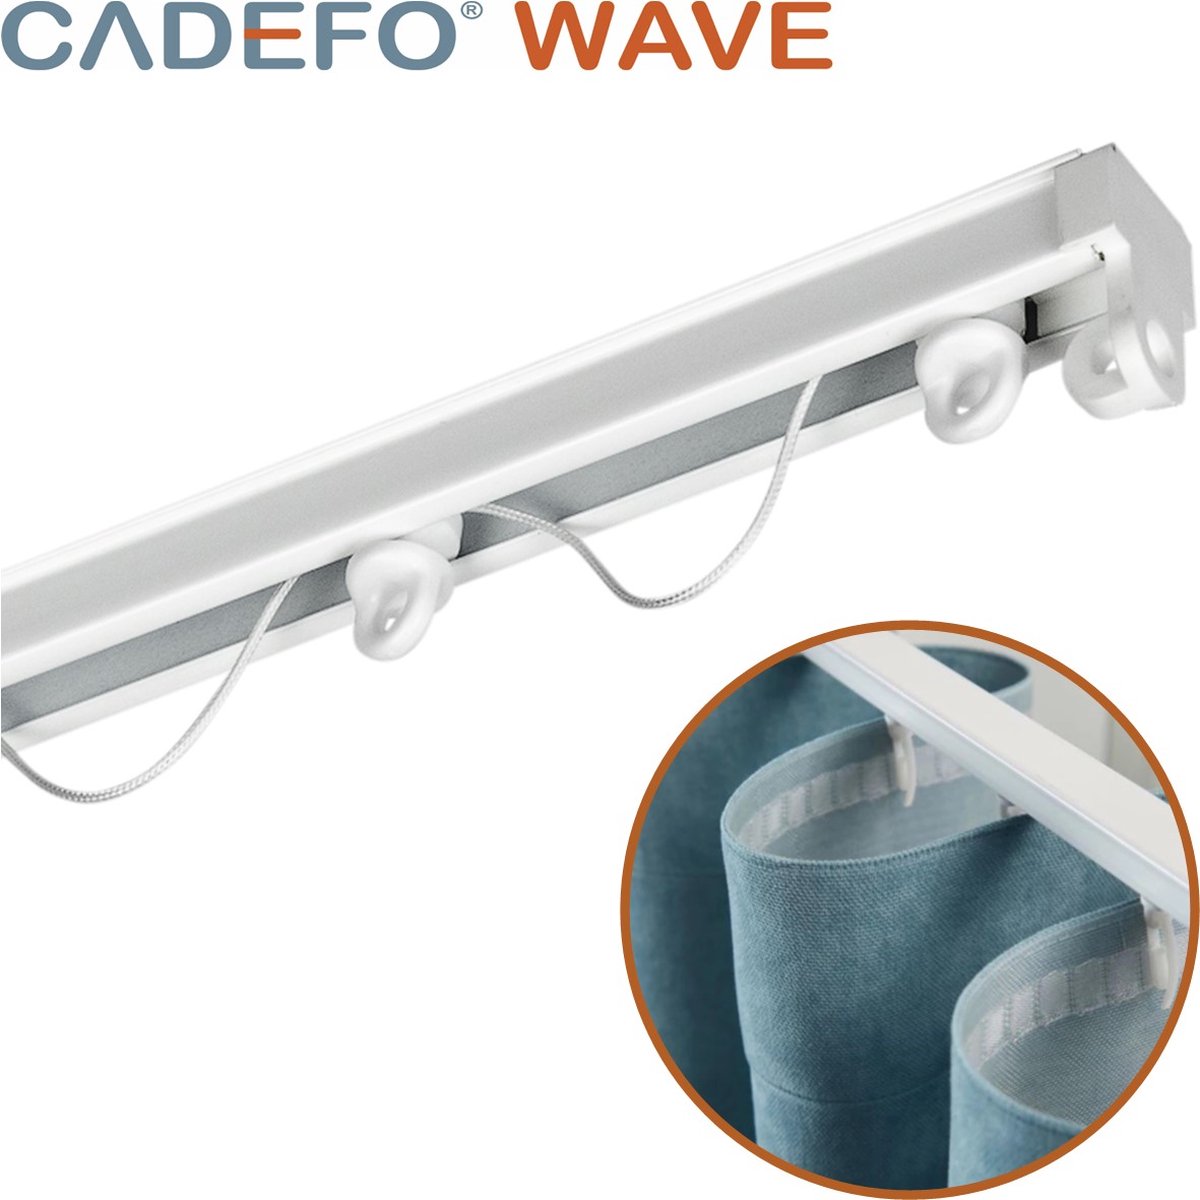 CADEFO WAVE (551 - 600 cm) Gordijnrails - Compleet op maat! - UIT 1 STUK - Leverbaar tot 6 meter - Plafondbevestiging - Lengte 564 cm